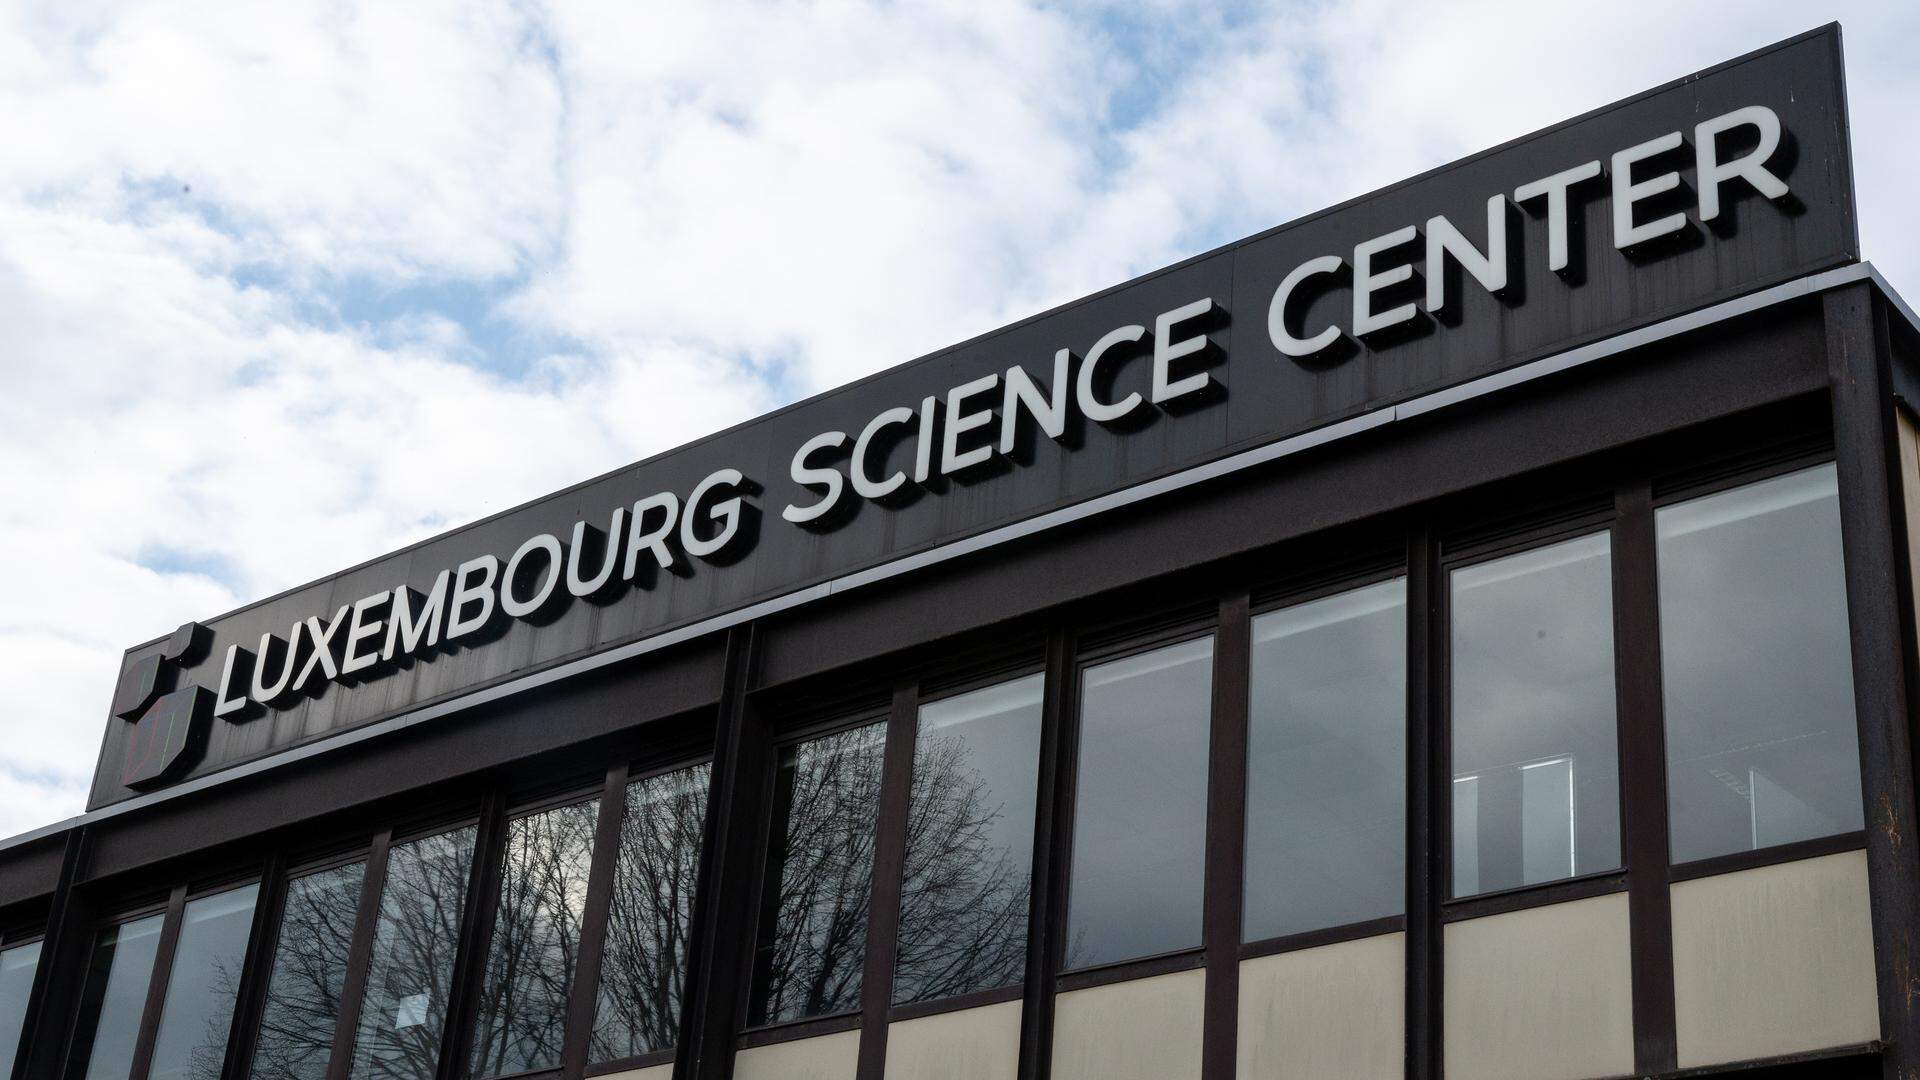 Suite à son enquête sur les flux financiers entre le Luxembourg Science Center et la société GGM11, l'Inspection des Finances a déposé plainte auprès du Parquet.